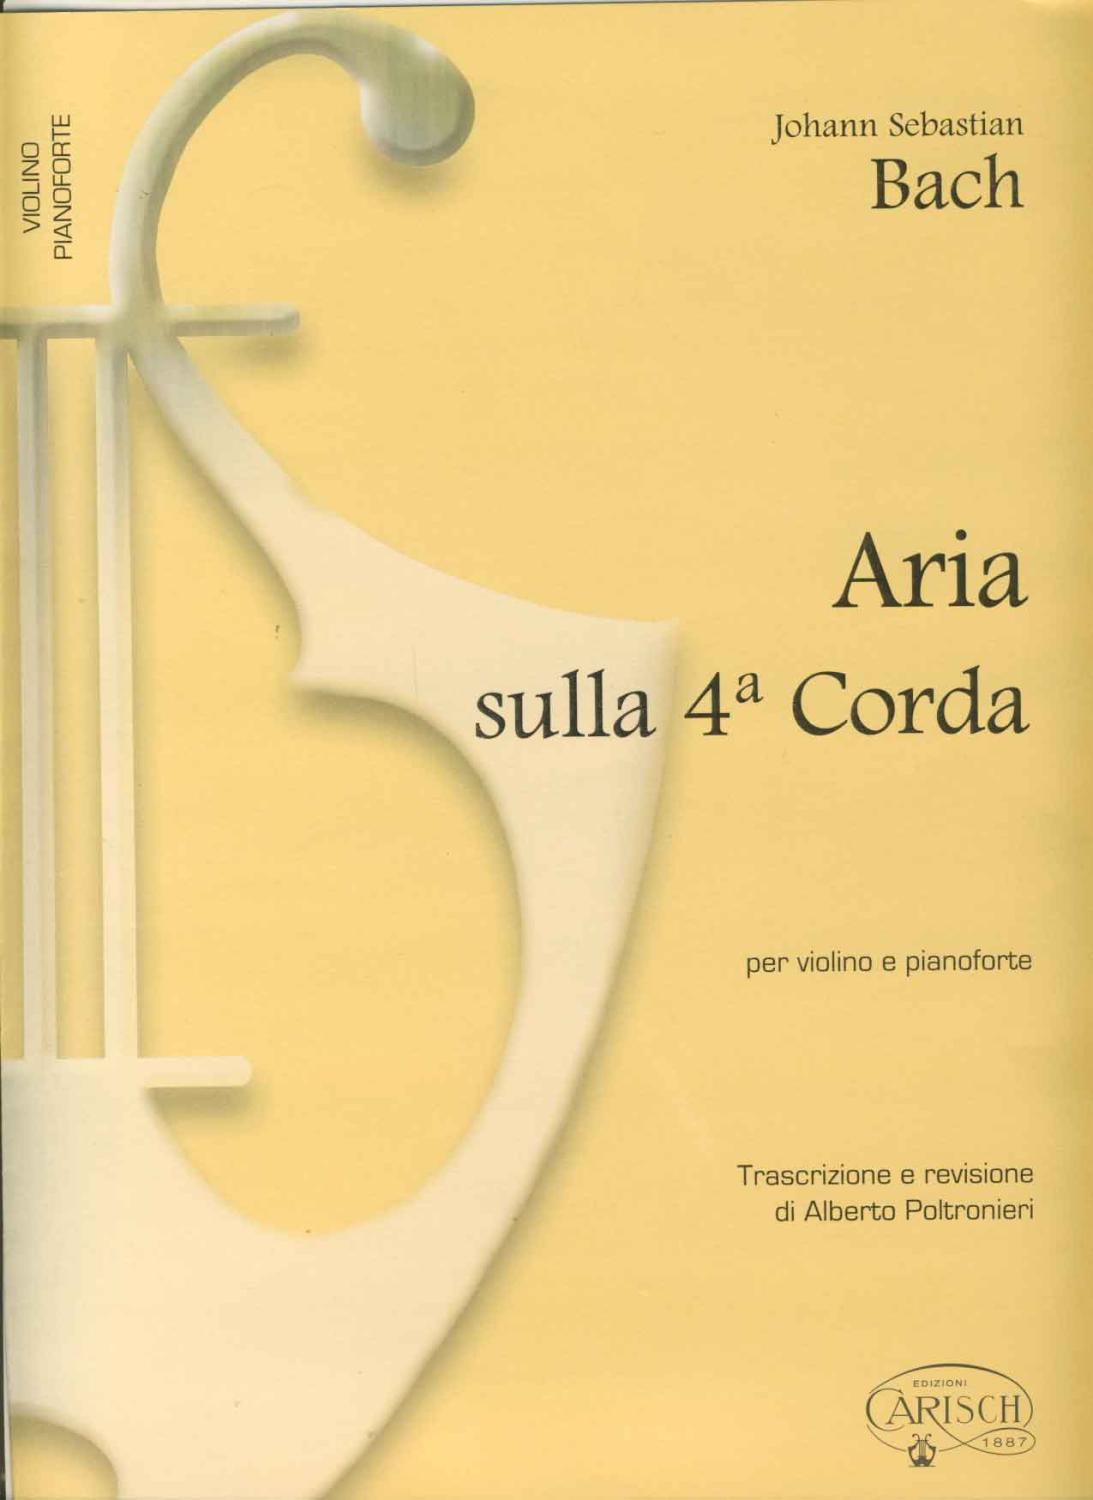 BACH - Aria de la Suite en Re Mayor (BWV:1068) para Violin y Piano (Poltronieri) - BACH